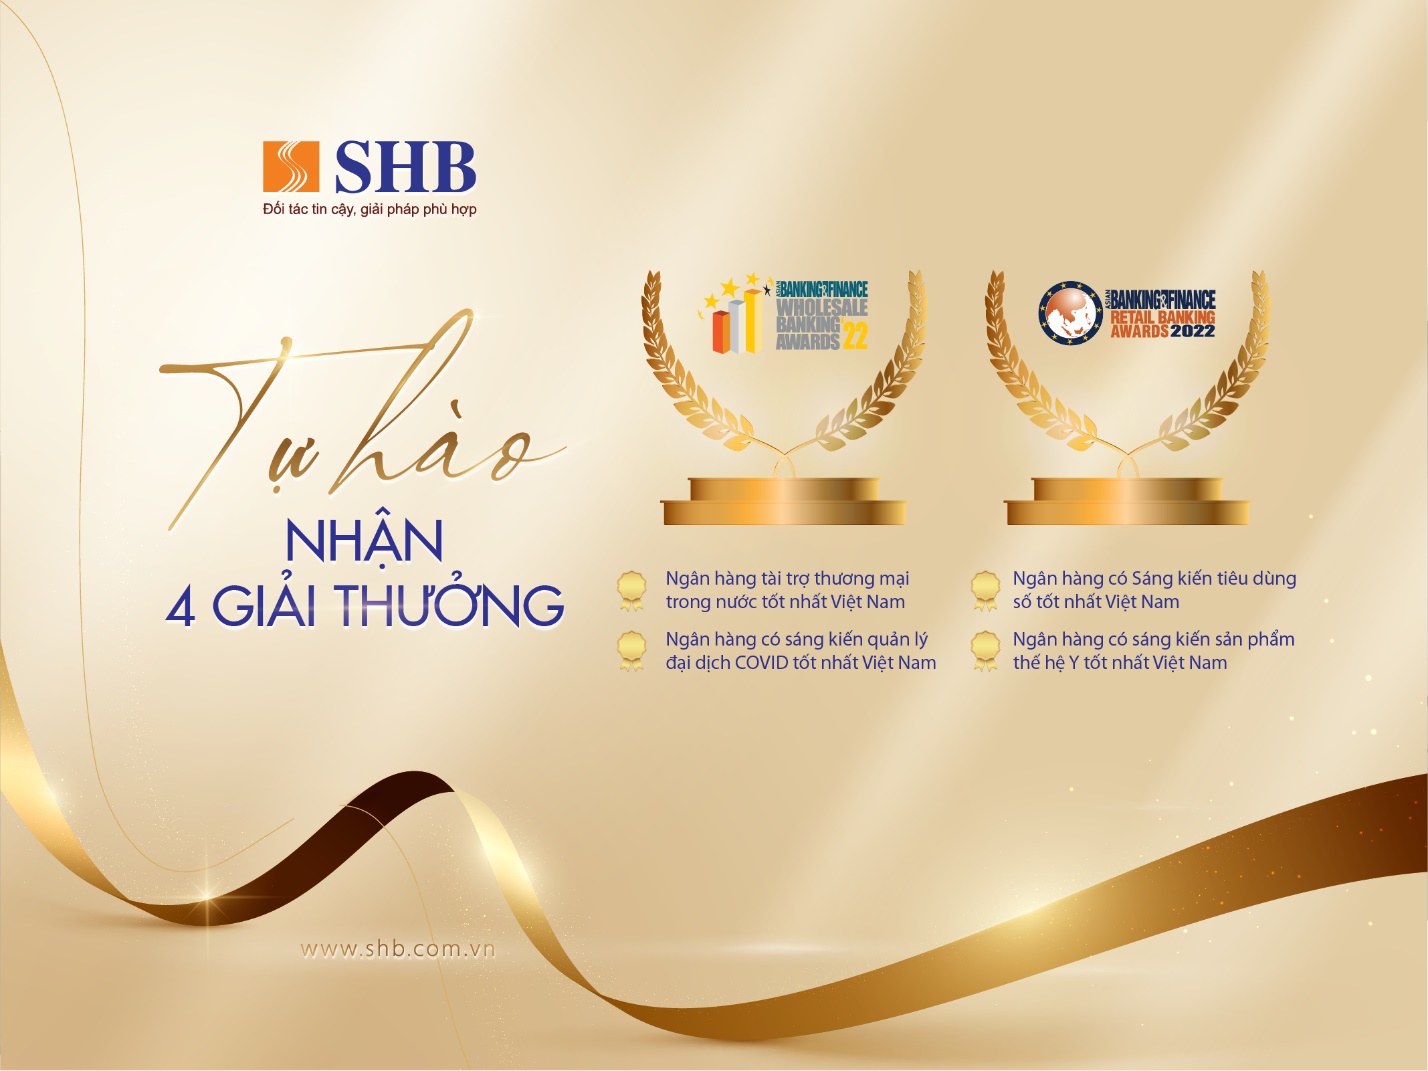 Ngân hàng SHB “thắng lớn” các giải thưởng của ABF - Ảnh 1.